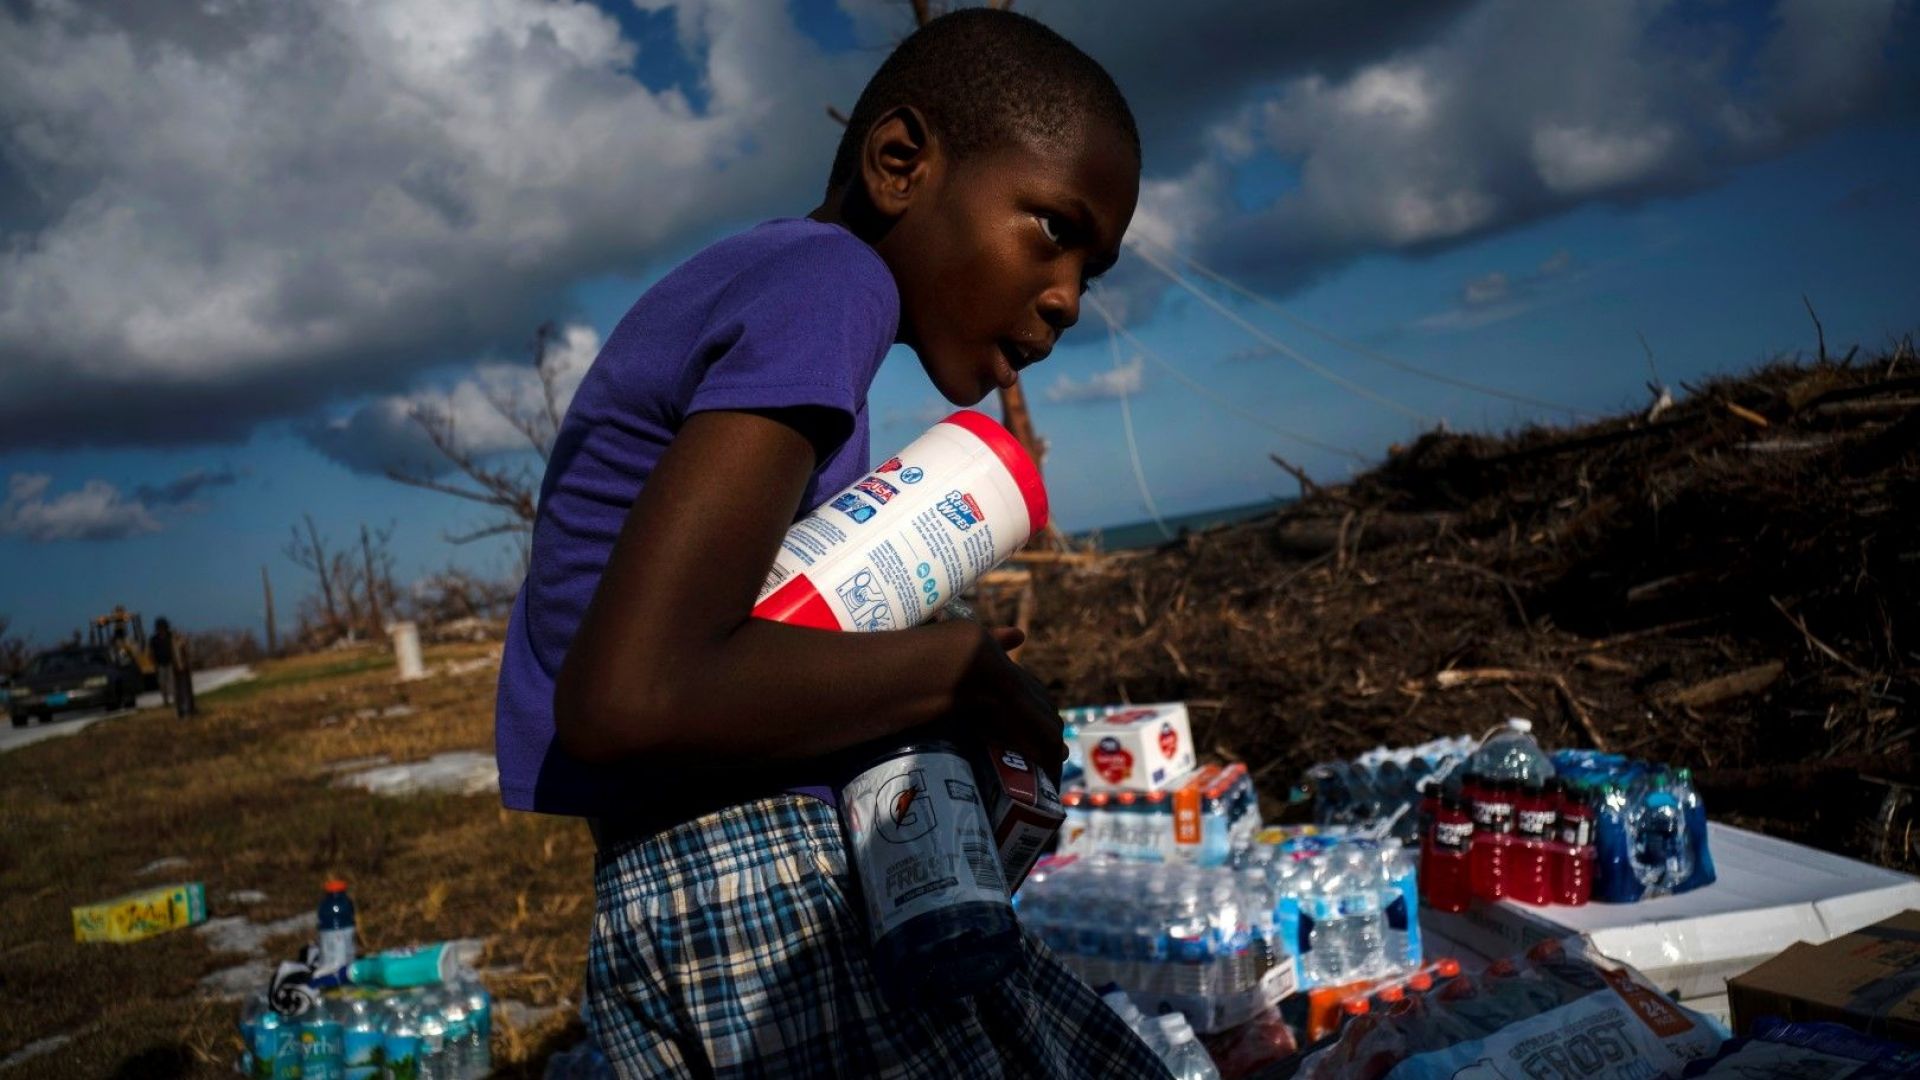 Айфон Минус, 8-годишен, събира дарена храна, която е била донесена с хеликоптер. 